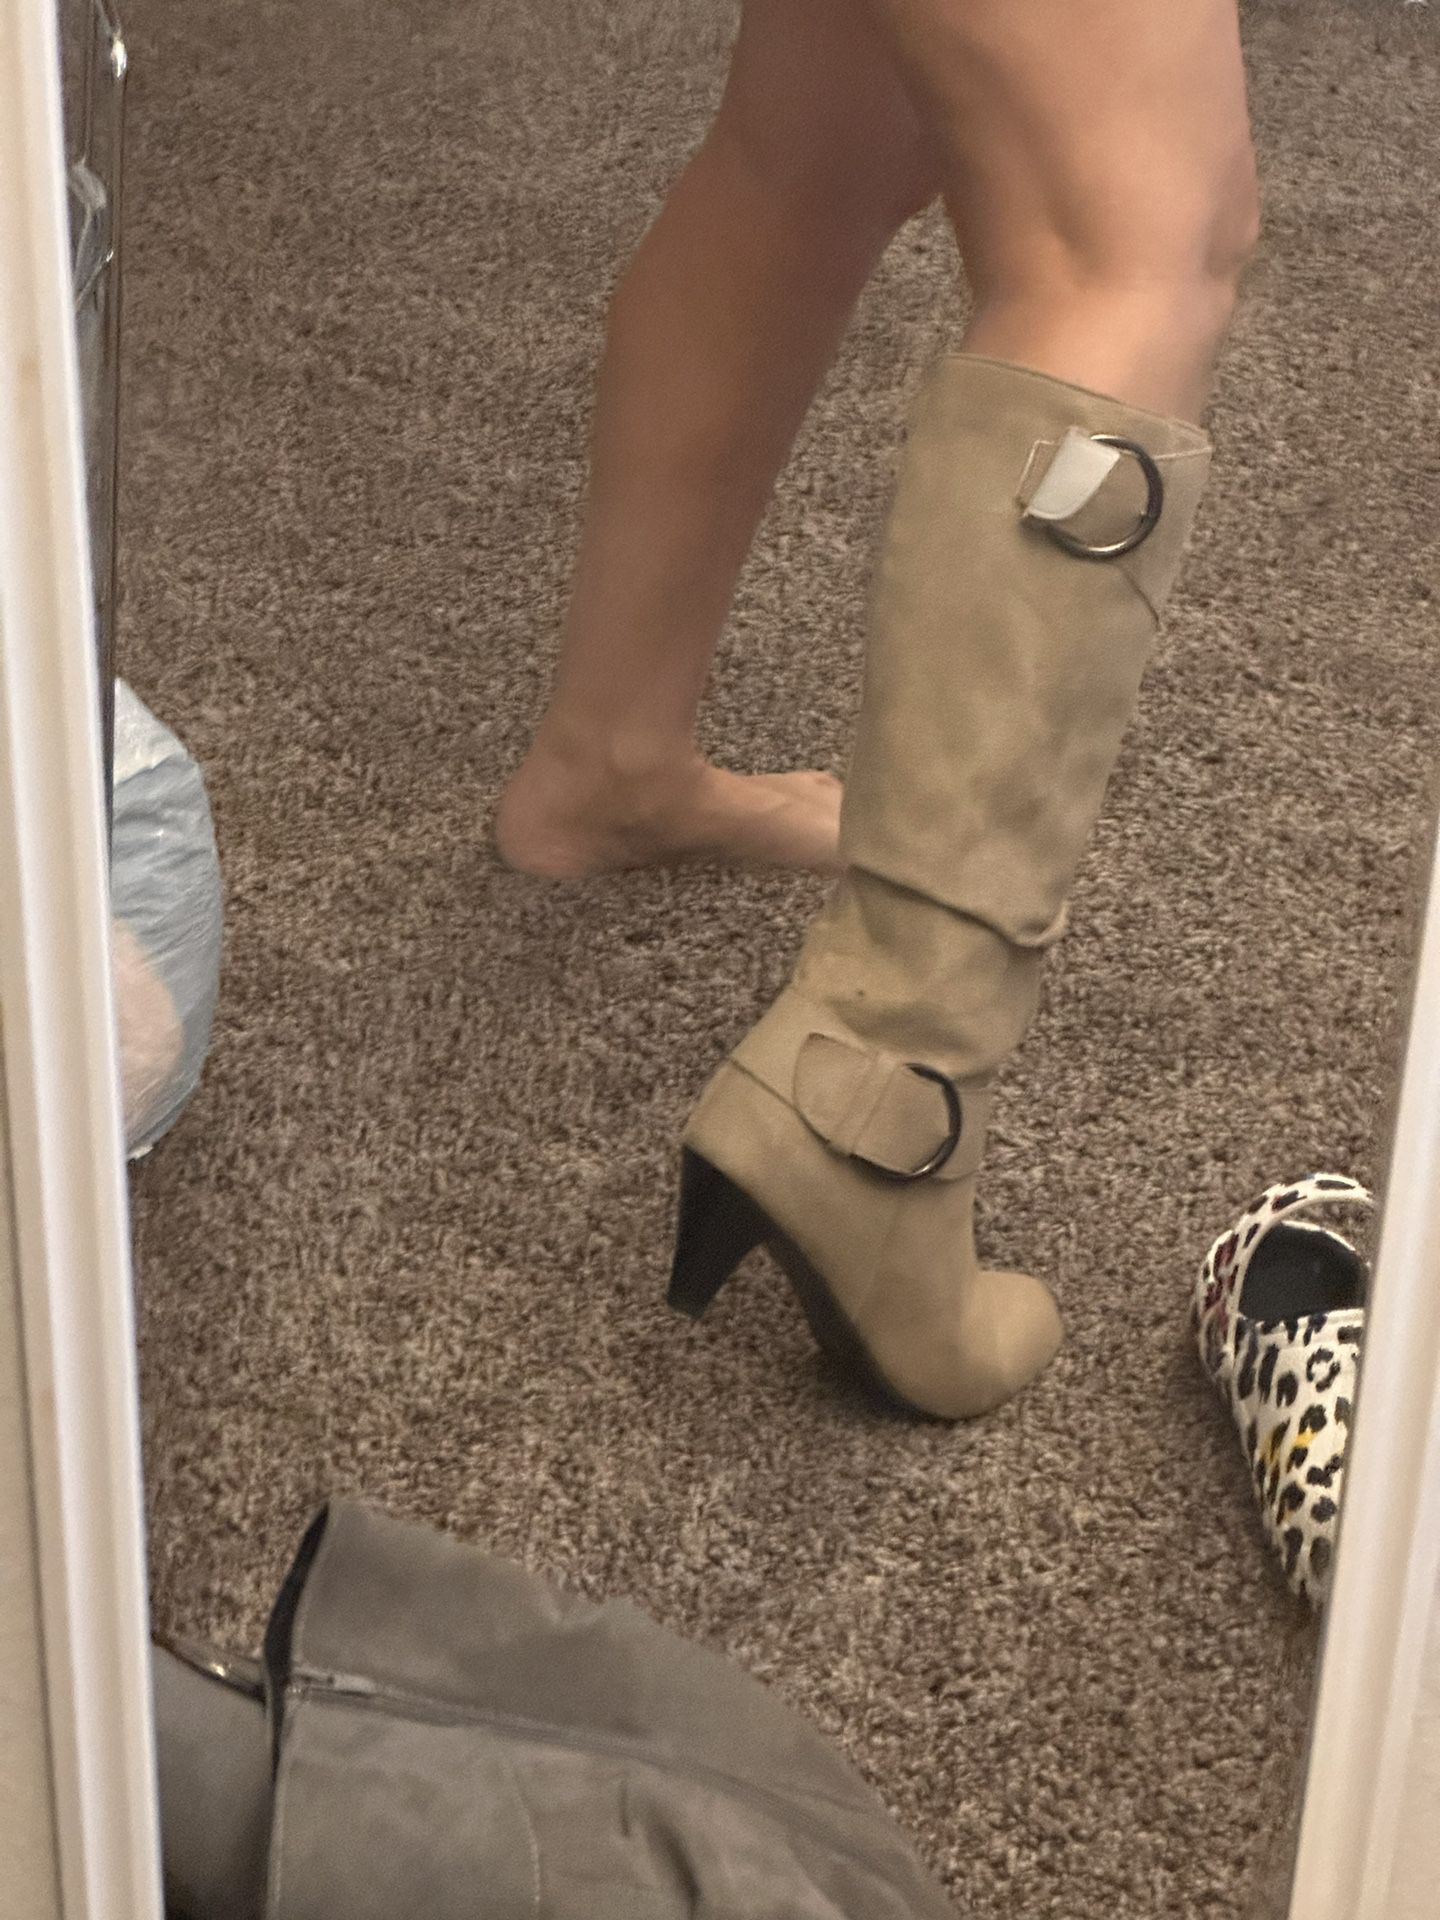 Women’s Boots